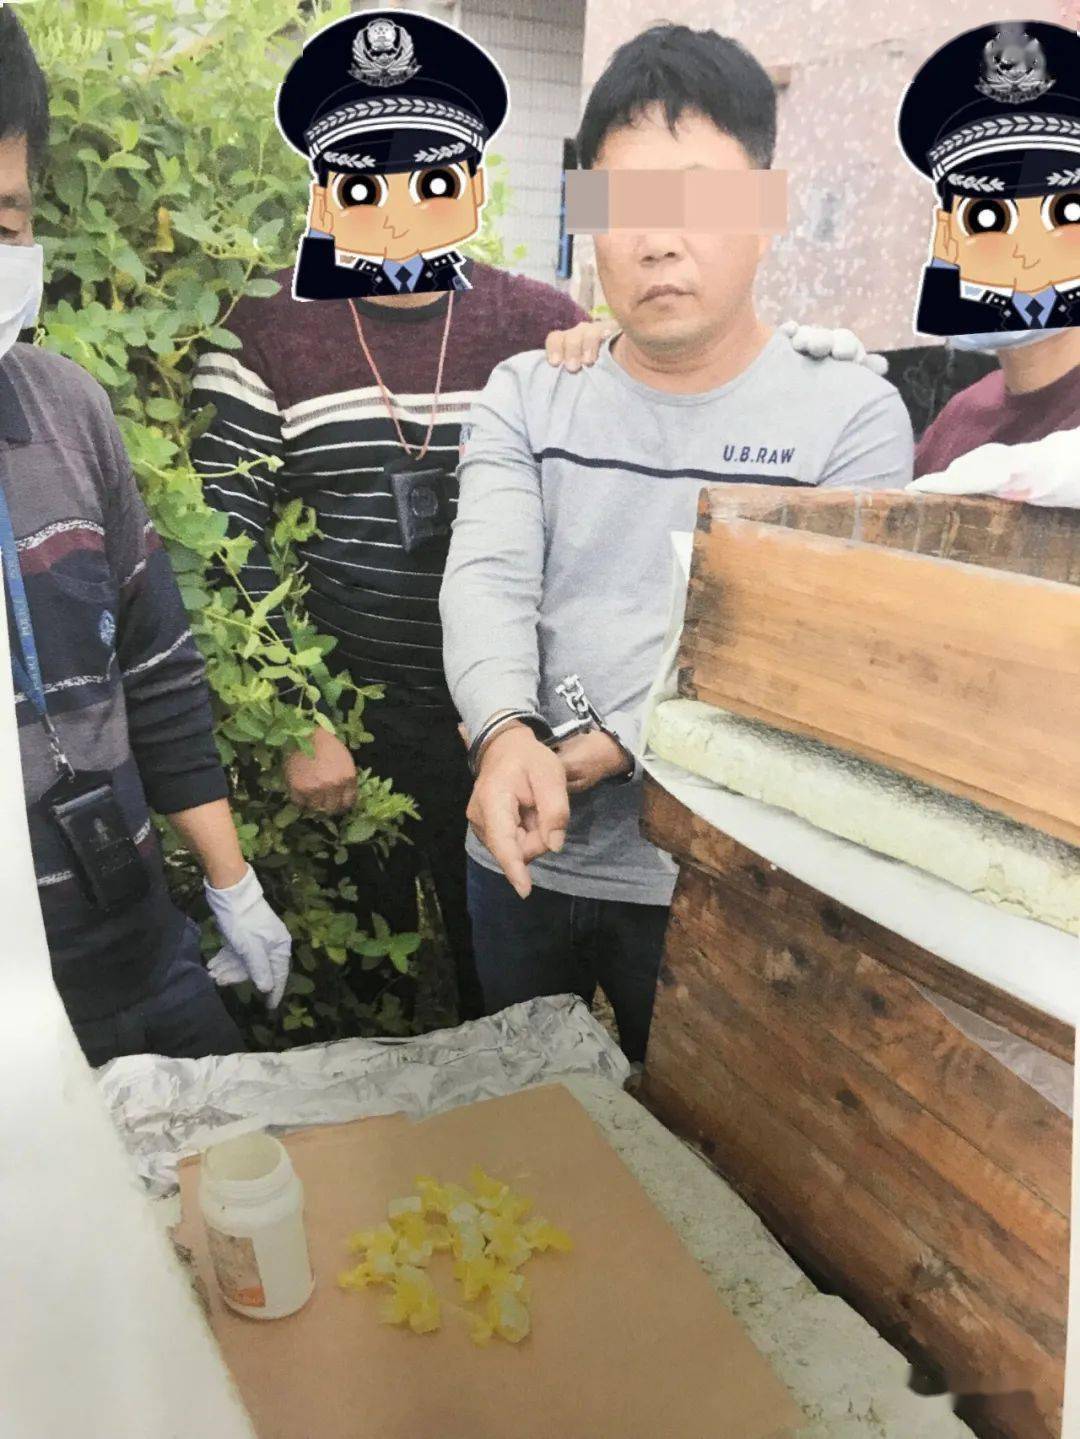 台前县贩毒图片